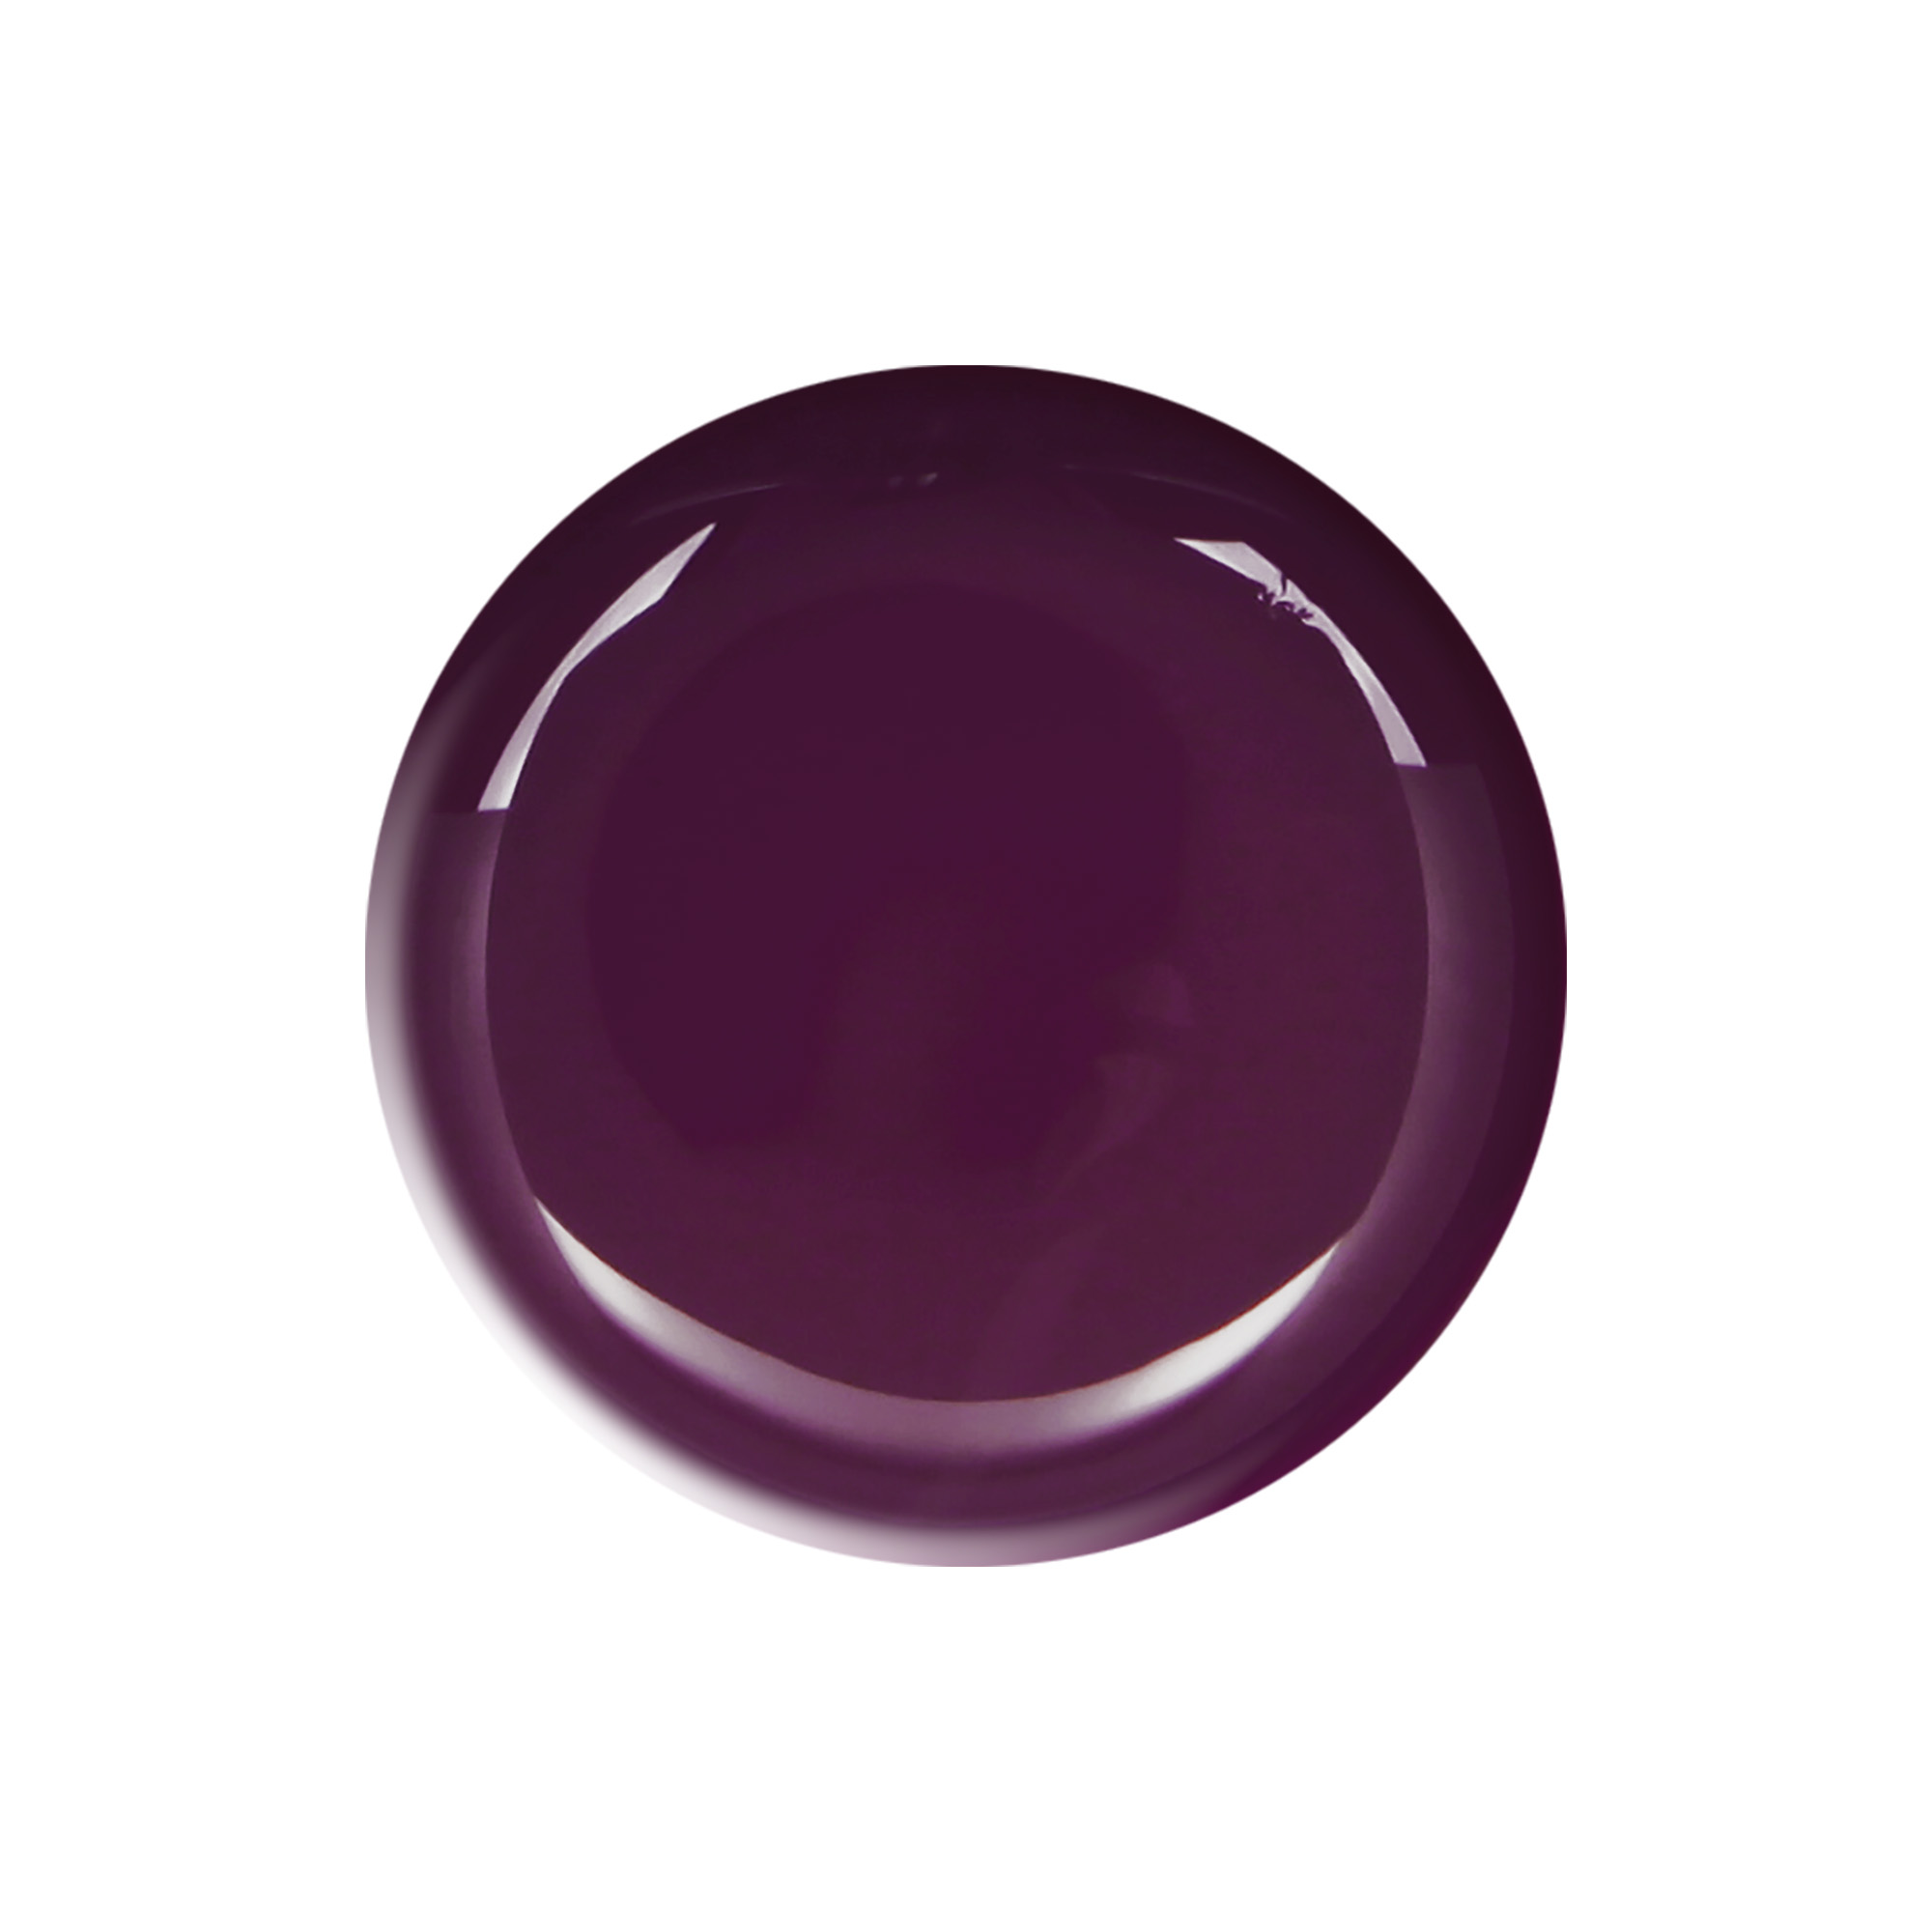 Semi-permanent nail polish dark purple Rouches 10 ml Laqerìs TNS